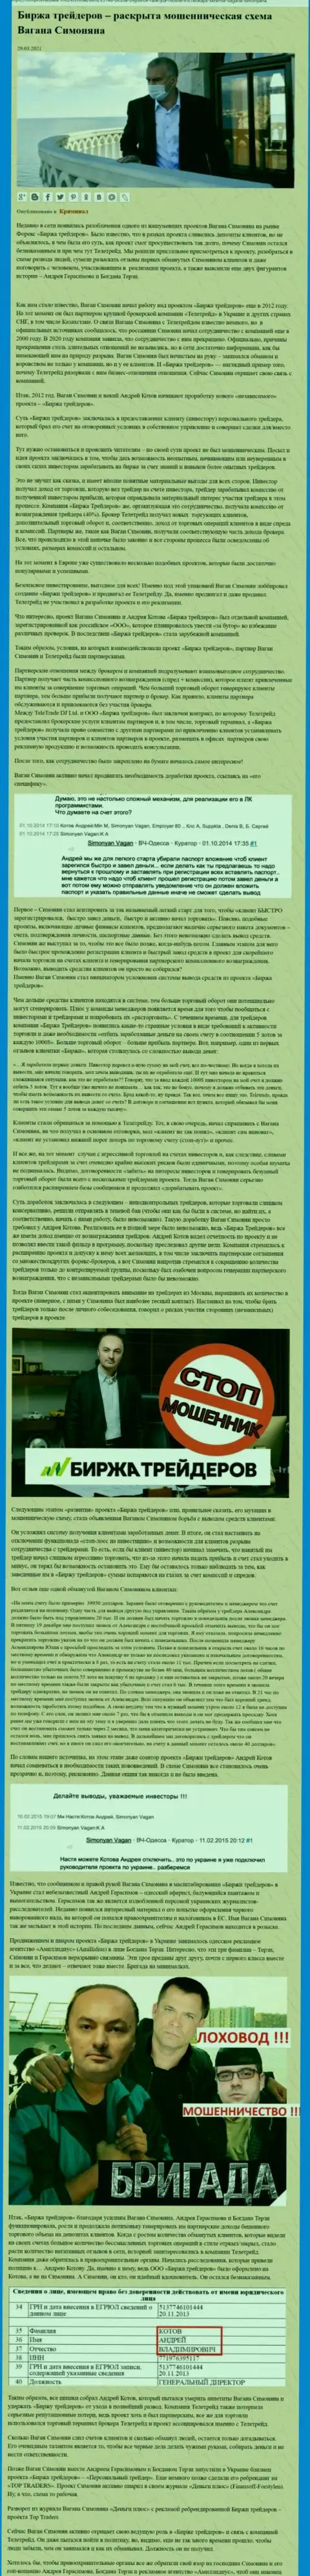 Пиаром организации Биржа Трейдеров, связанной с кидалами TeleTrade Ru, тоже занимался Богдан Терзи